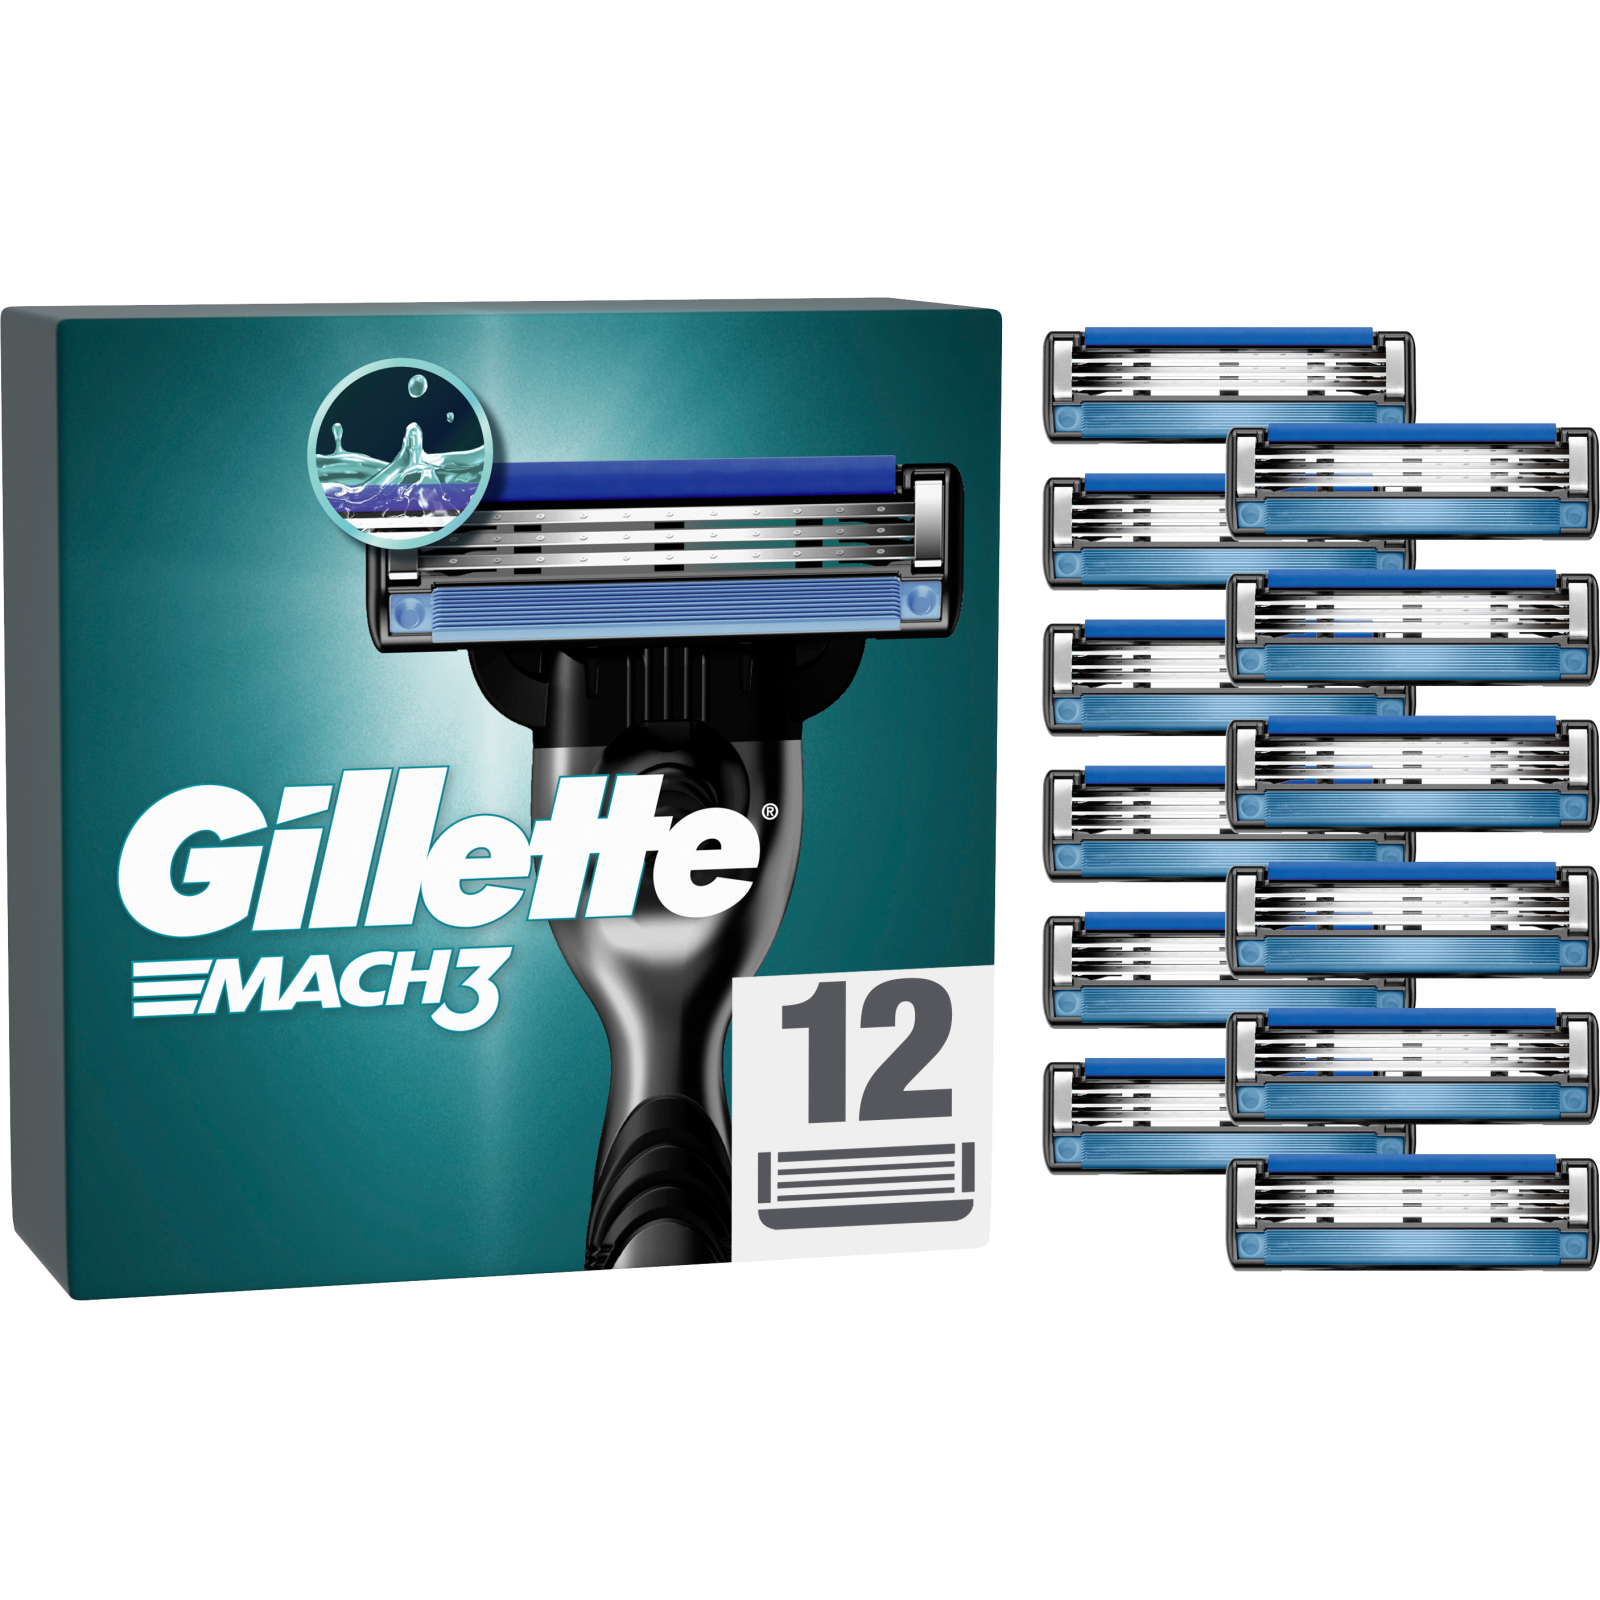 Сменные кассеты Gillette Mach3 4 шт. (3014260243531)